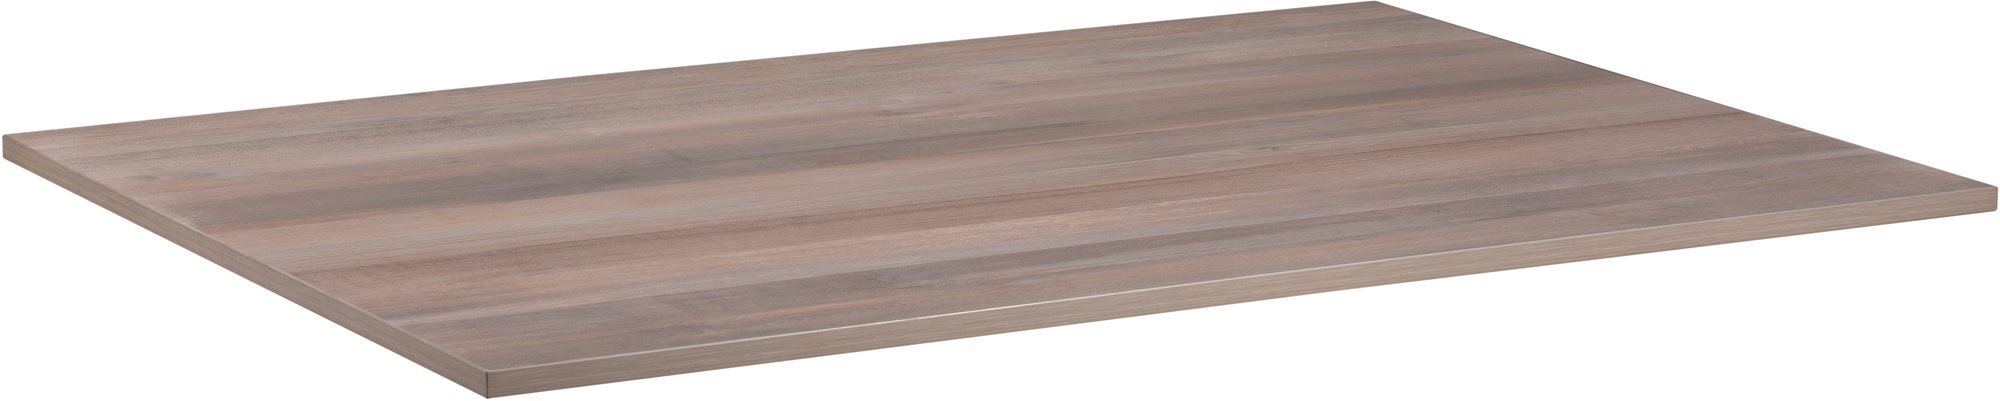 Asztallap AlzaErgo TTE-01 140x80 cm laminált szürke tölgyfa